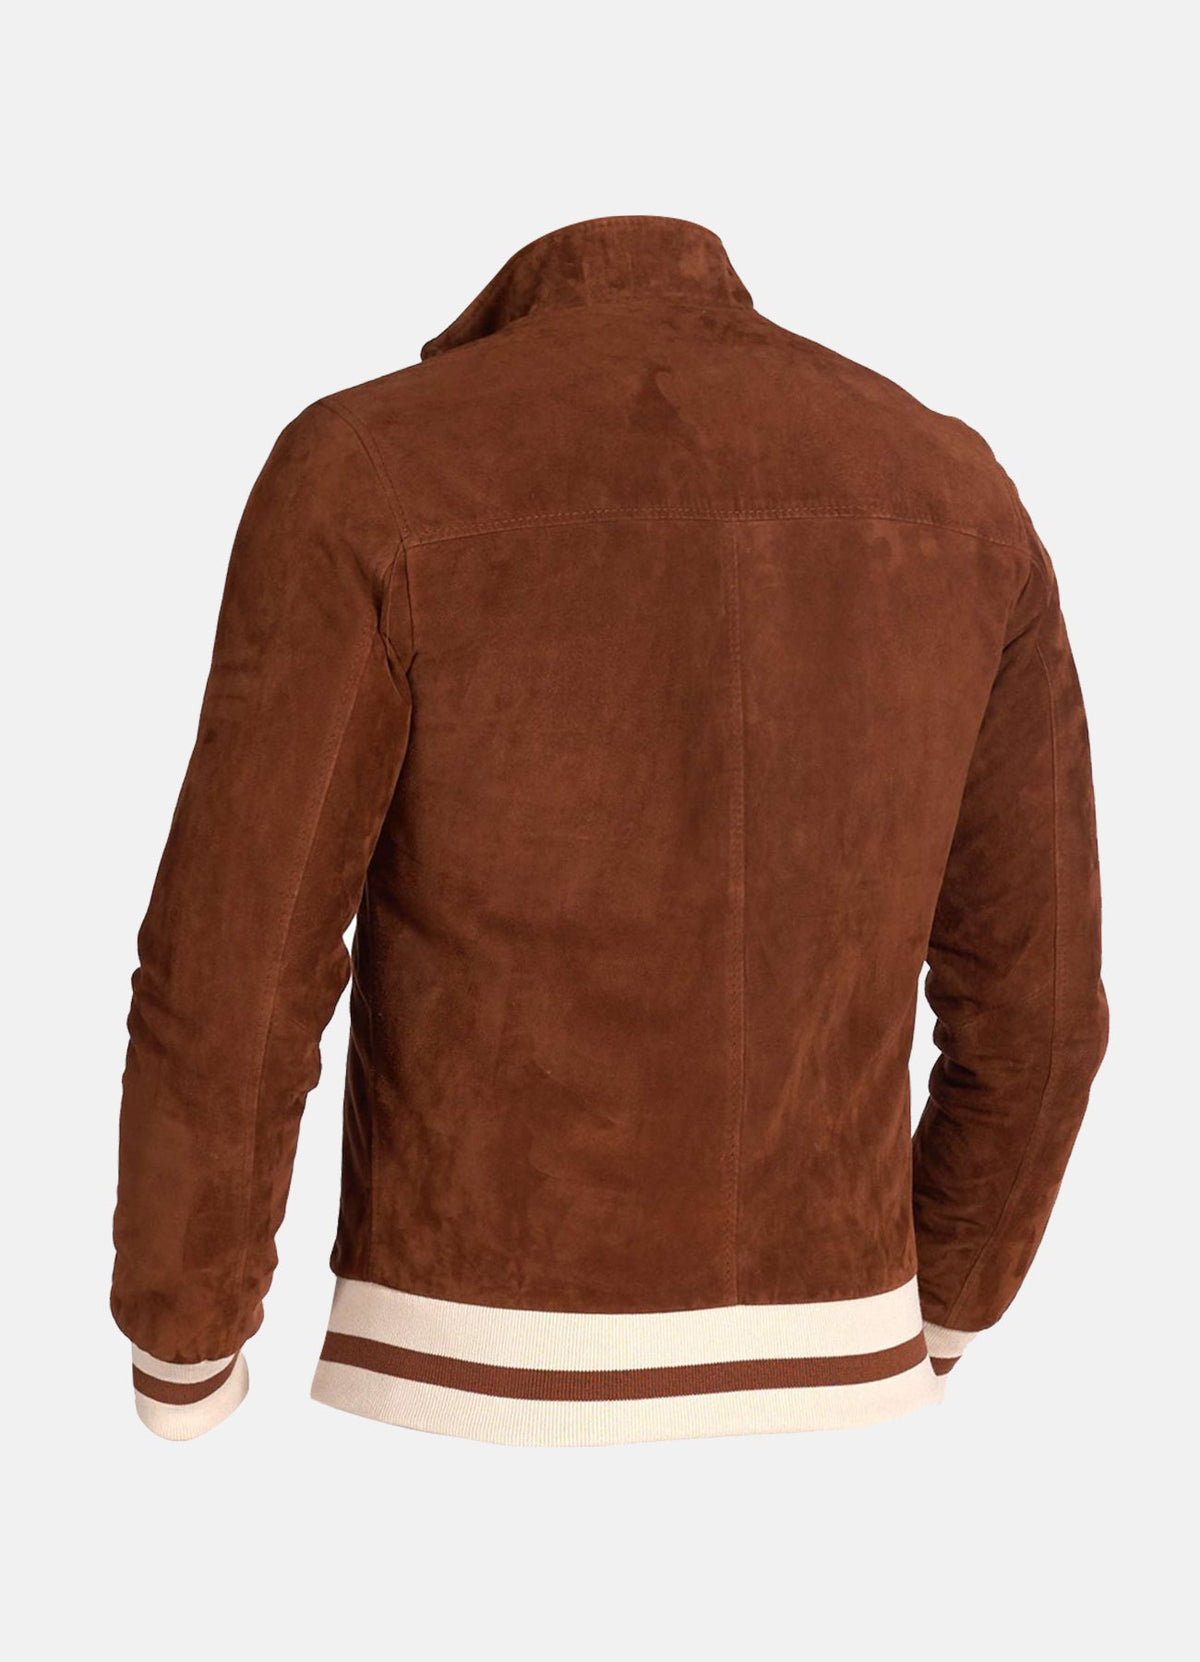 Mens Slimfit Brown Suede Leather Jacket